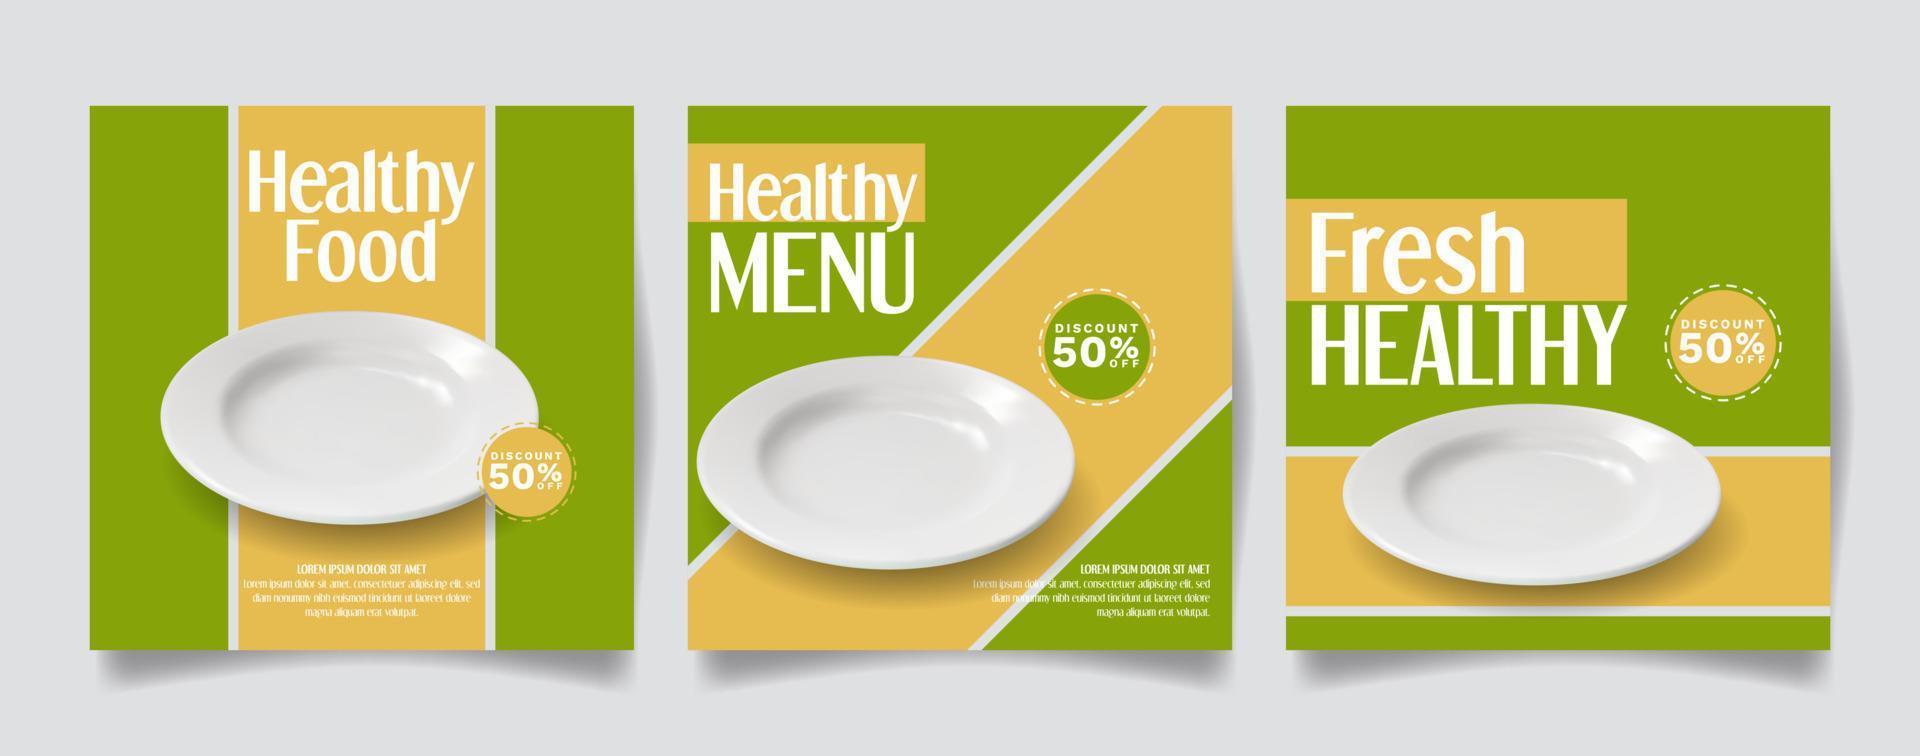 sociaal media post sjabloon voor gezond voedsel Promotie vector illustratie met wit bord